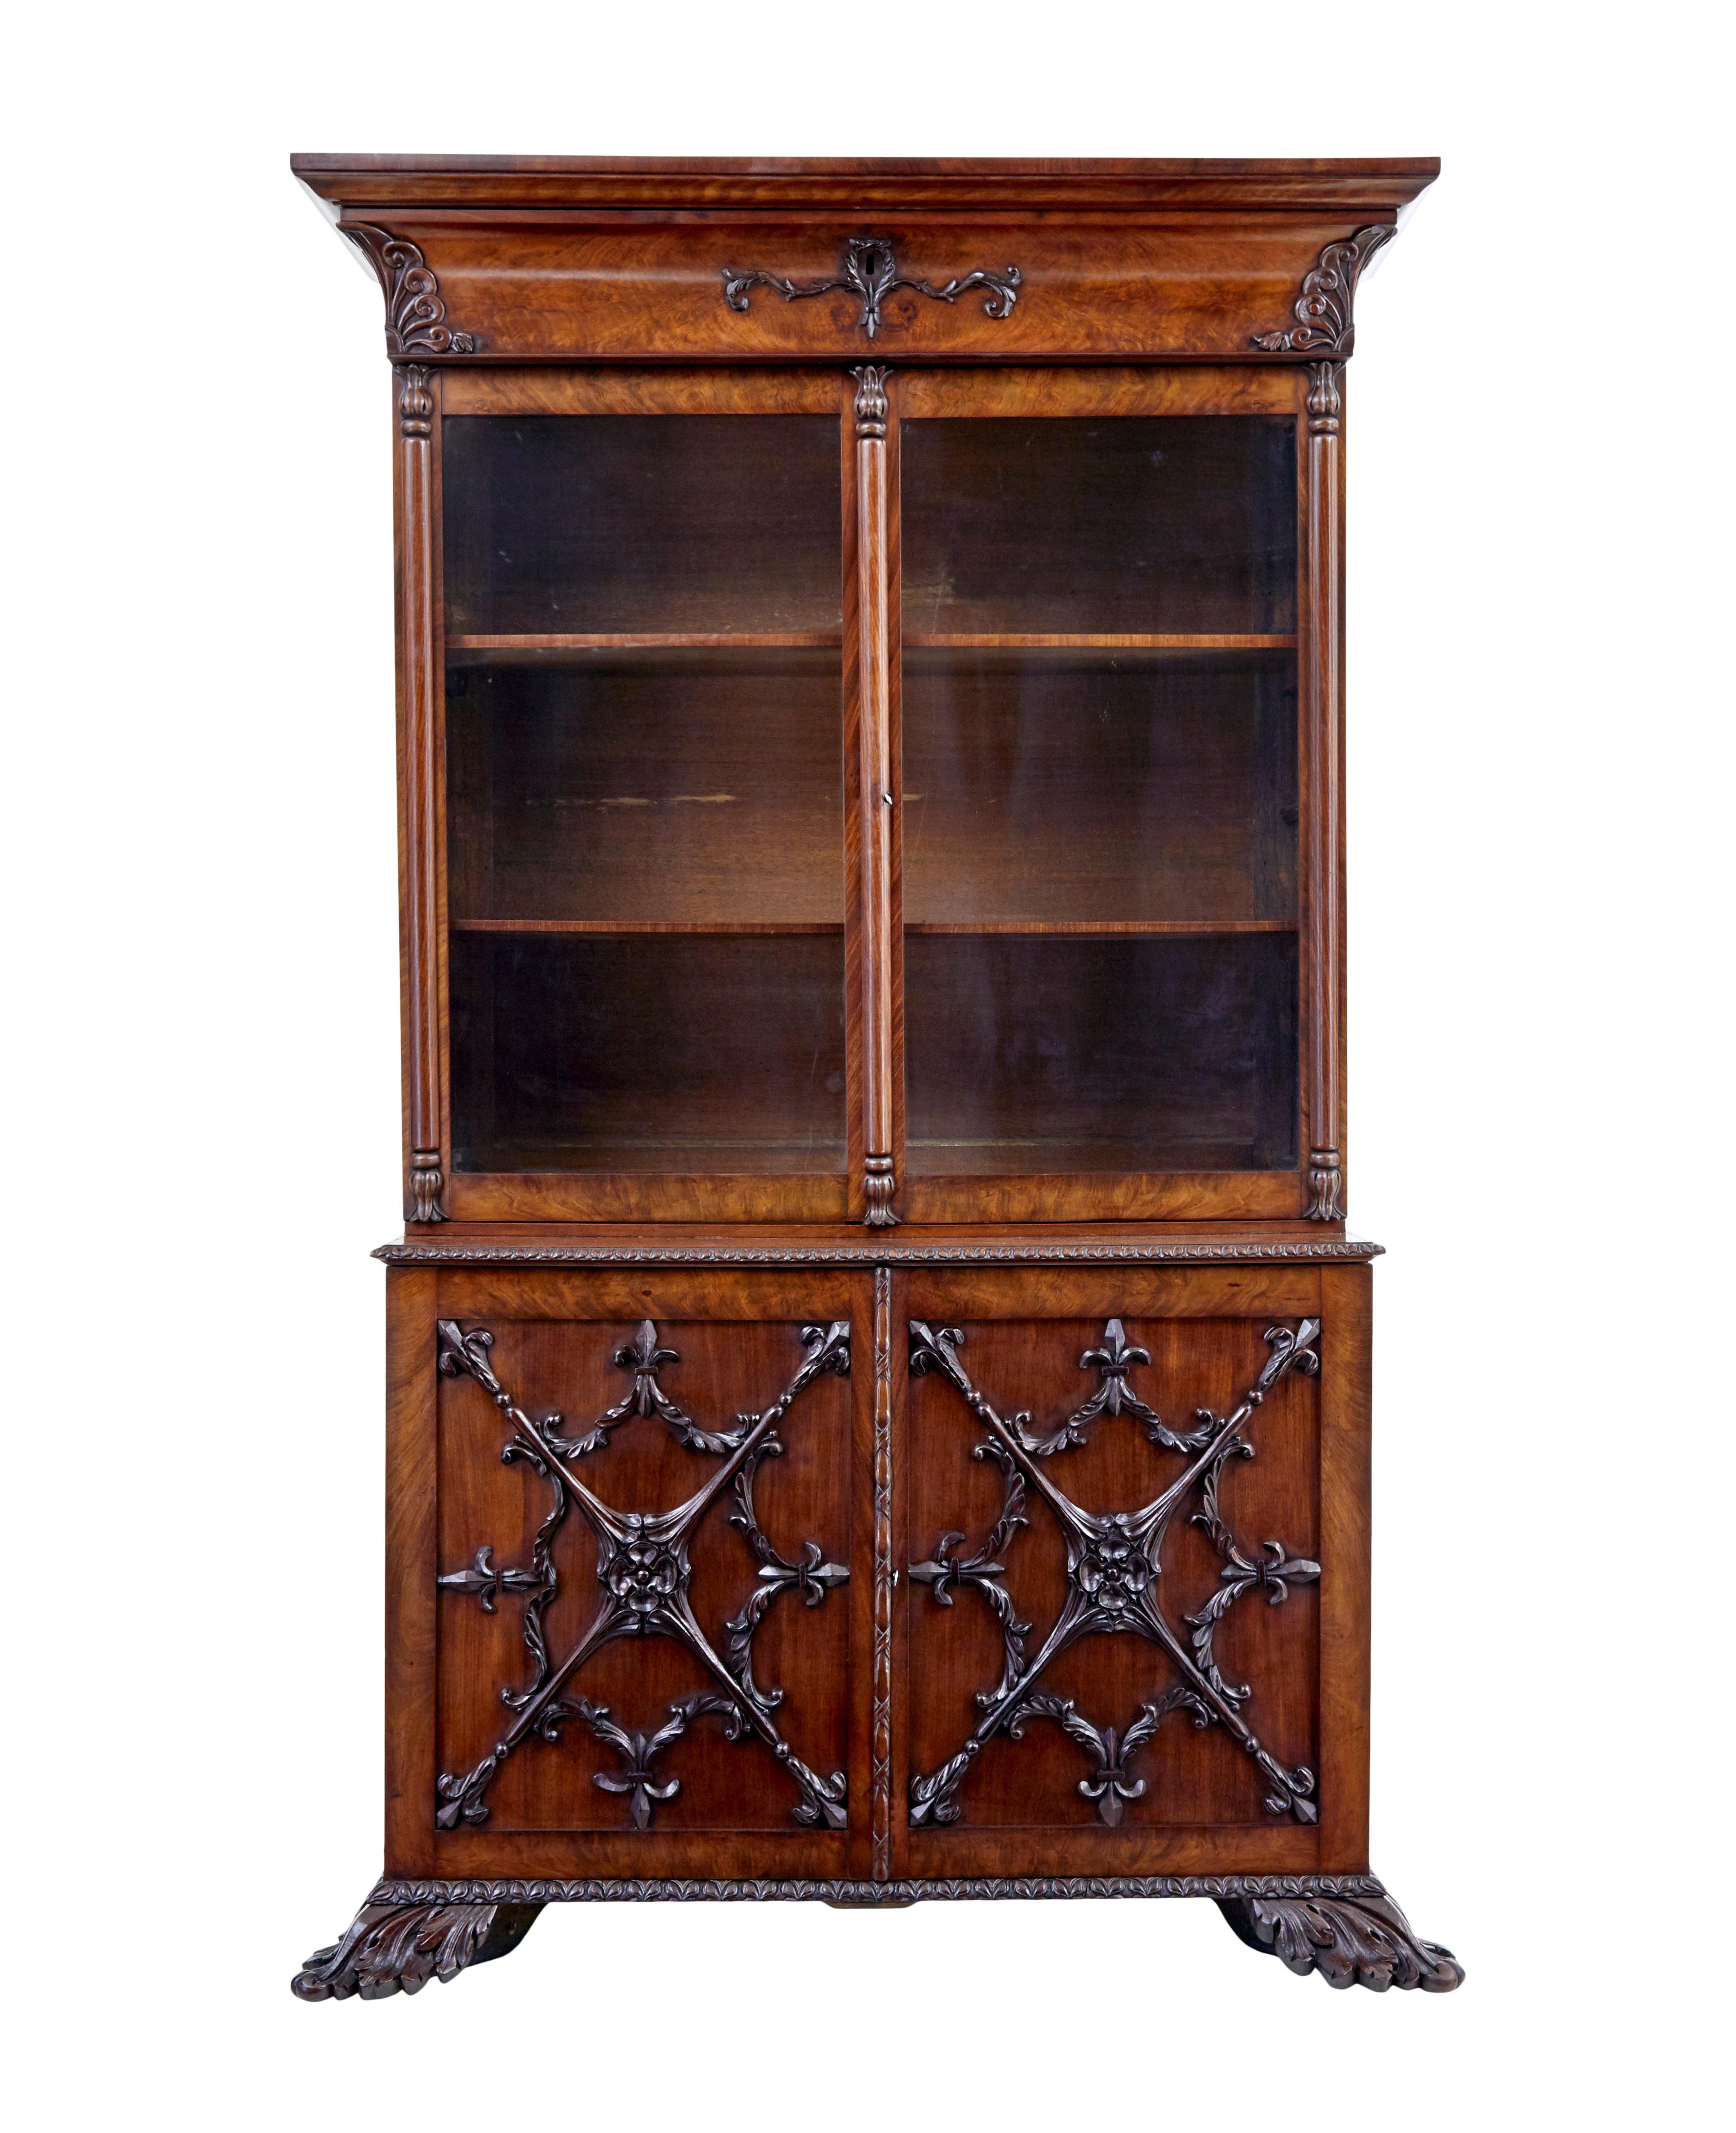 Seltenes Bücherregal aus geschnitztem dänischem Mahagoni um 1840.

2-teiliges Bücherregal.  Oberteil mit versteckter Schublade unterhalb des Gesimses.  An den Ecken und um das Schlüsselloch herum wurden Schnitzereien angebracht.  Die doppelt